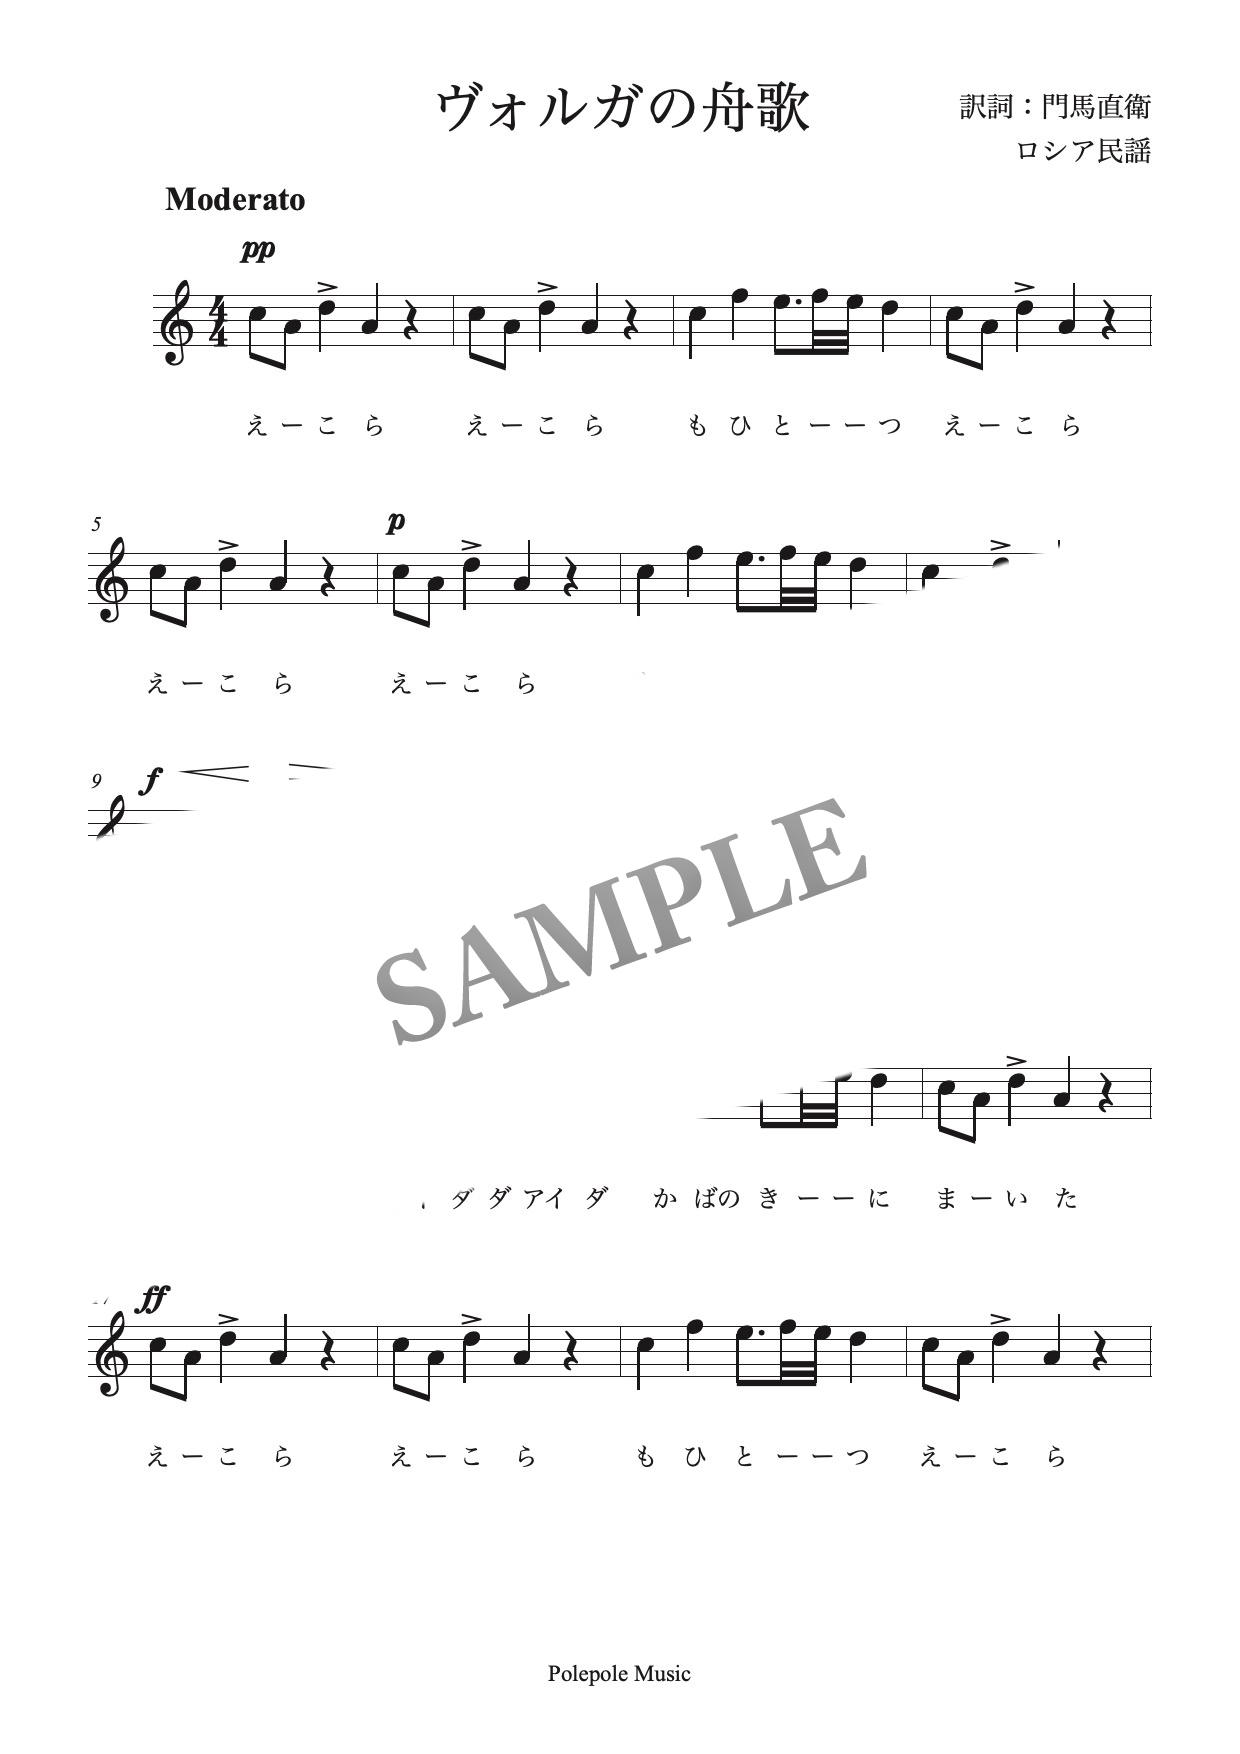 ヴォルガの舟歌 日本語歌詞メロディー譜 Mucome 音楽 楽譜の投稿ダウンロードサイト